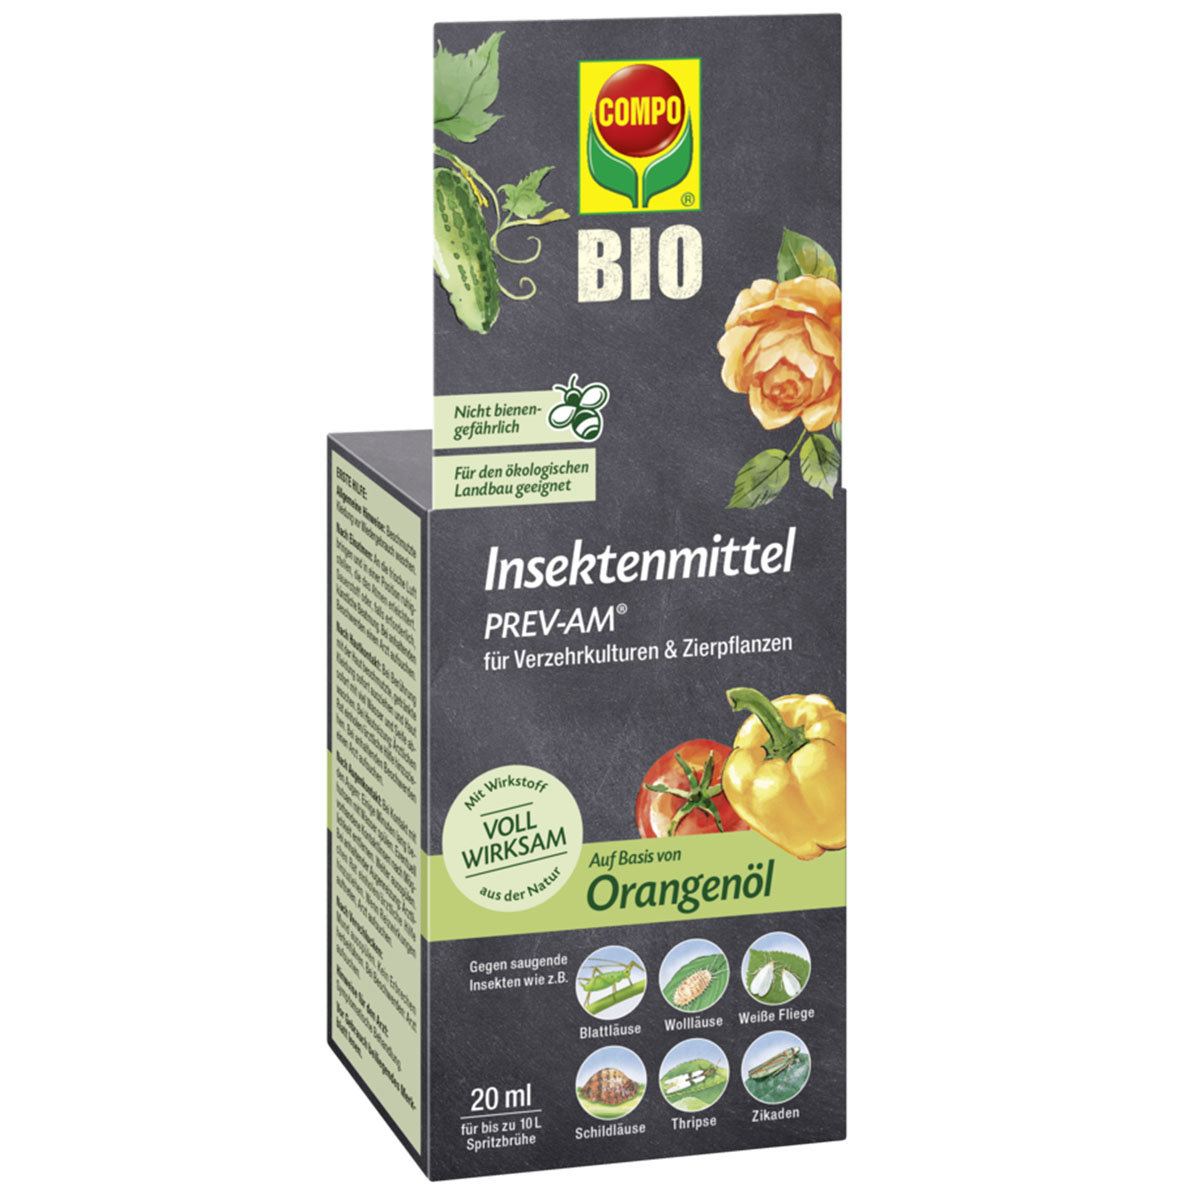 BIO Insektenmittel PREV-AM, 20 ml
